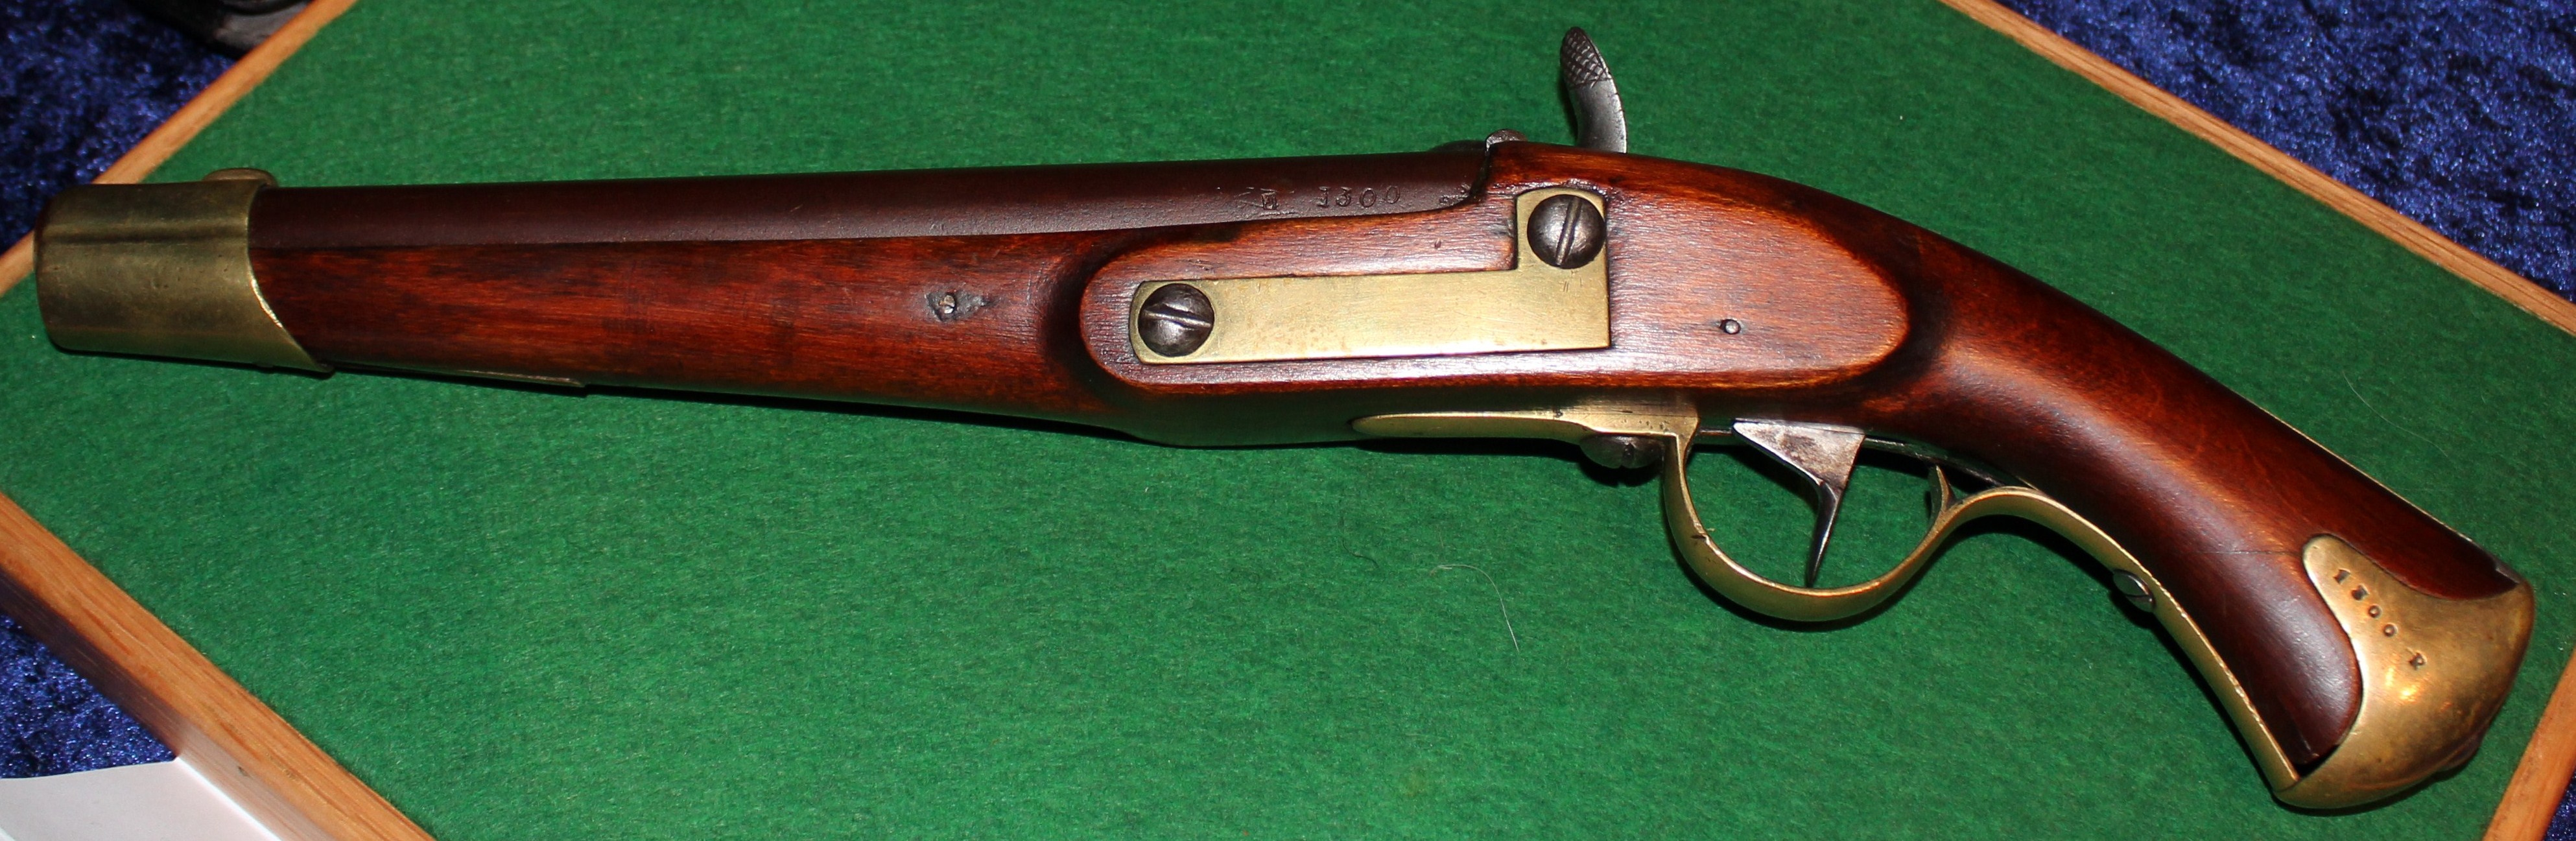 ./guns/pistol/bilder/Pistol-Kongsberg-M1834-46-1300-2.jpg